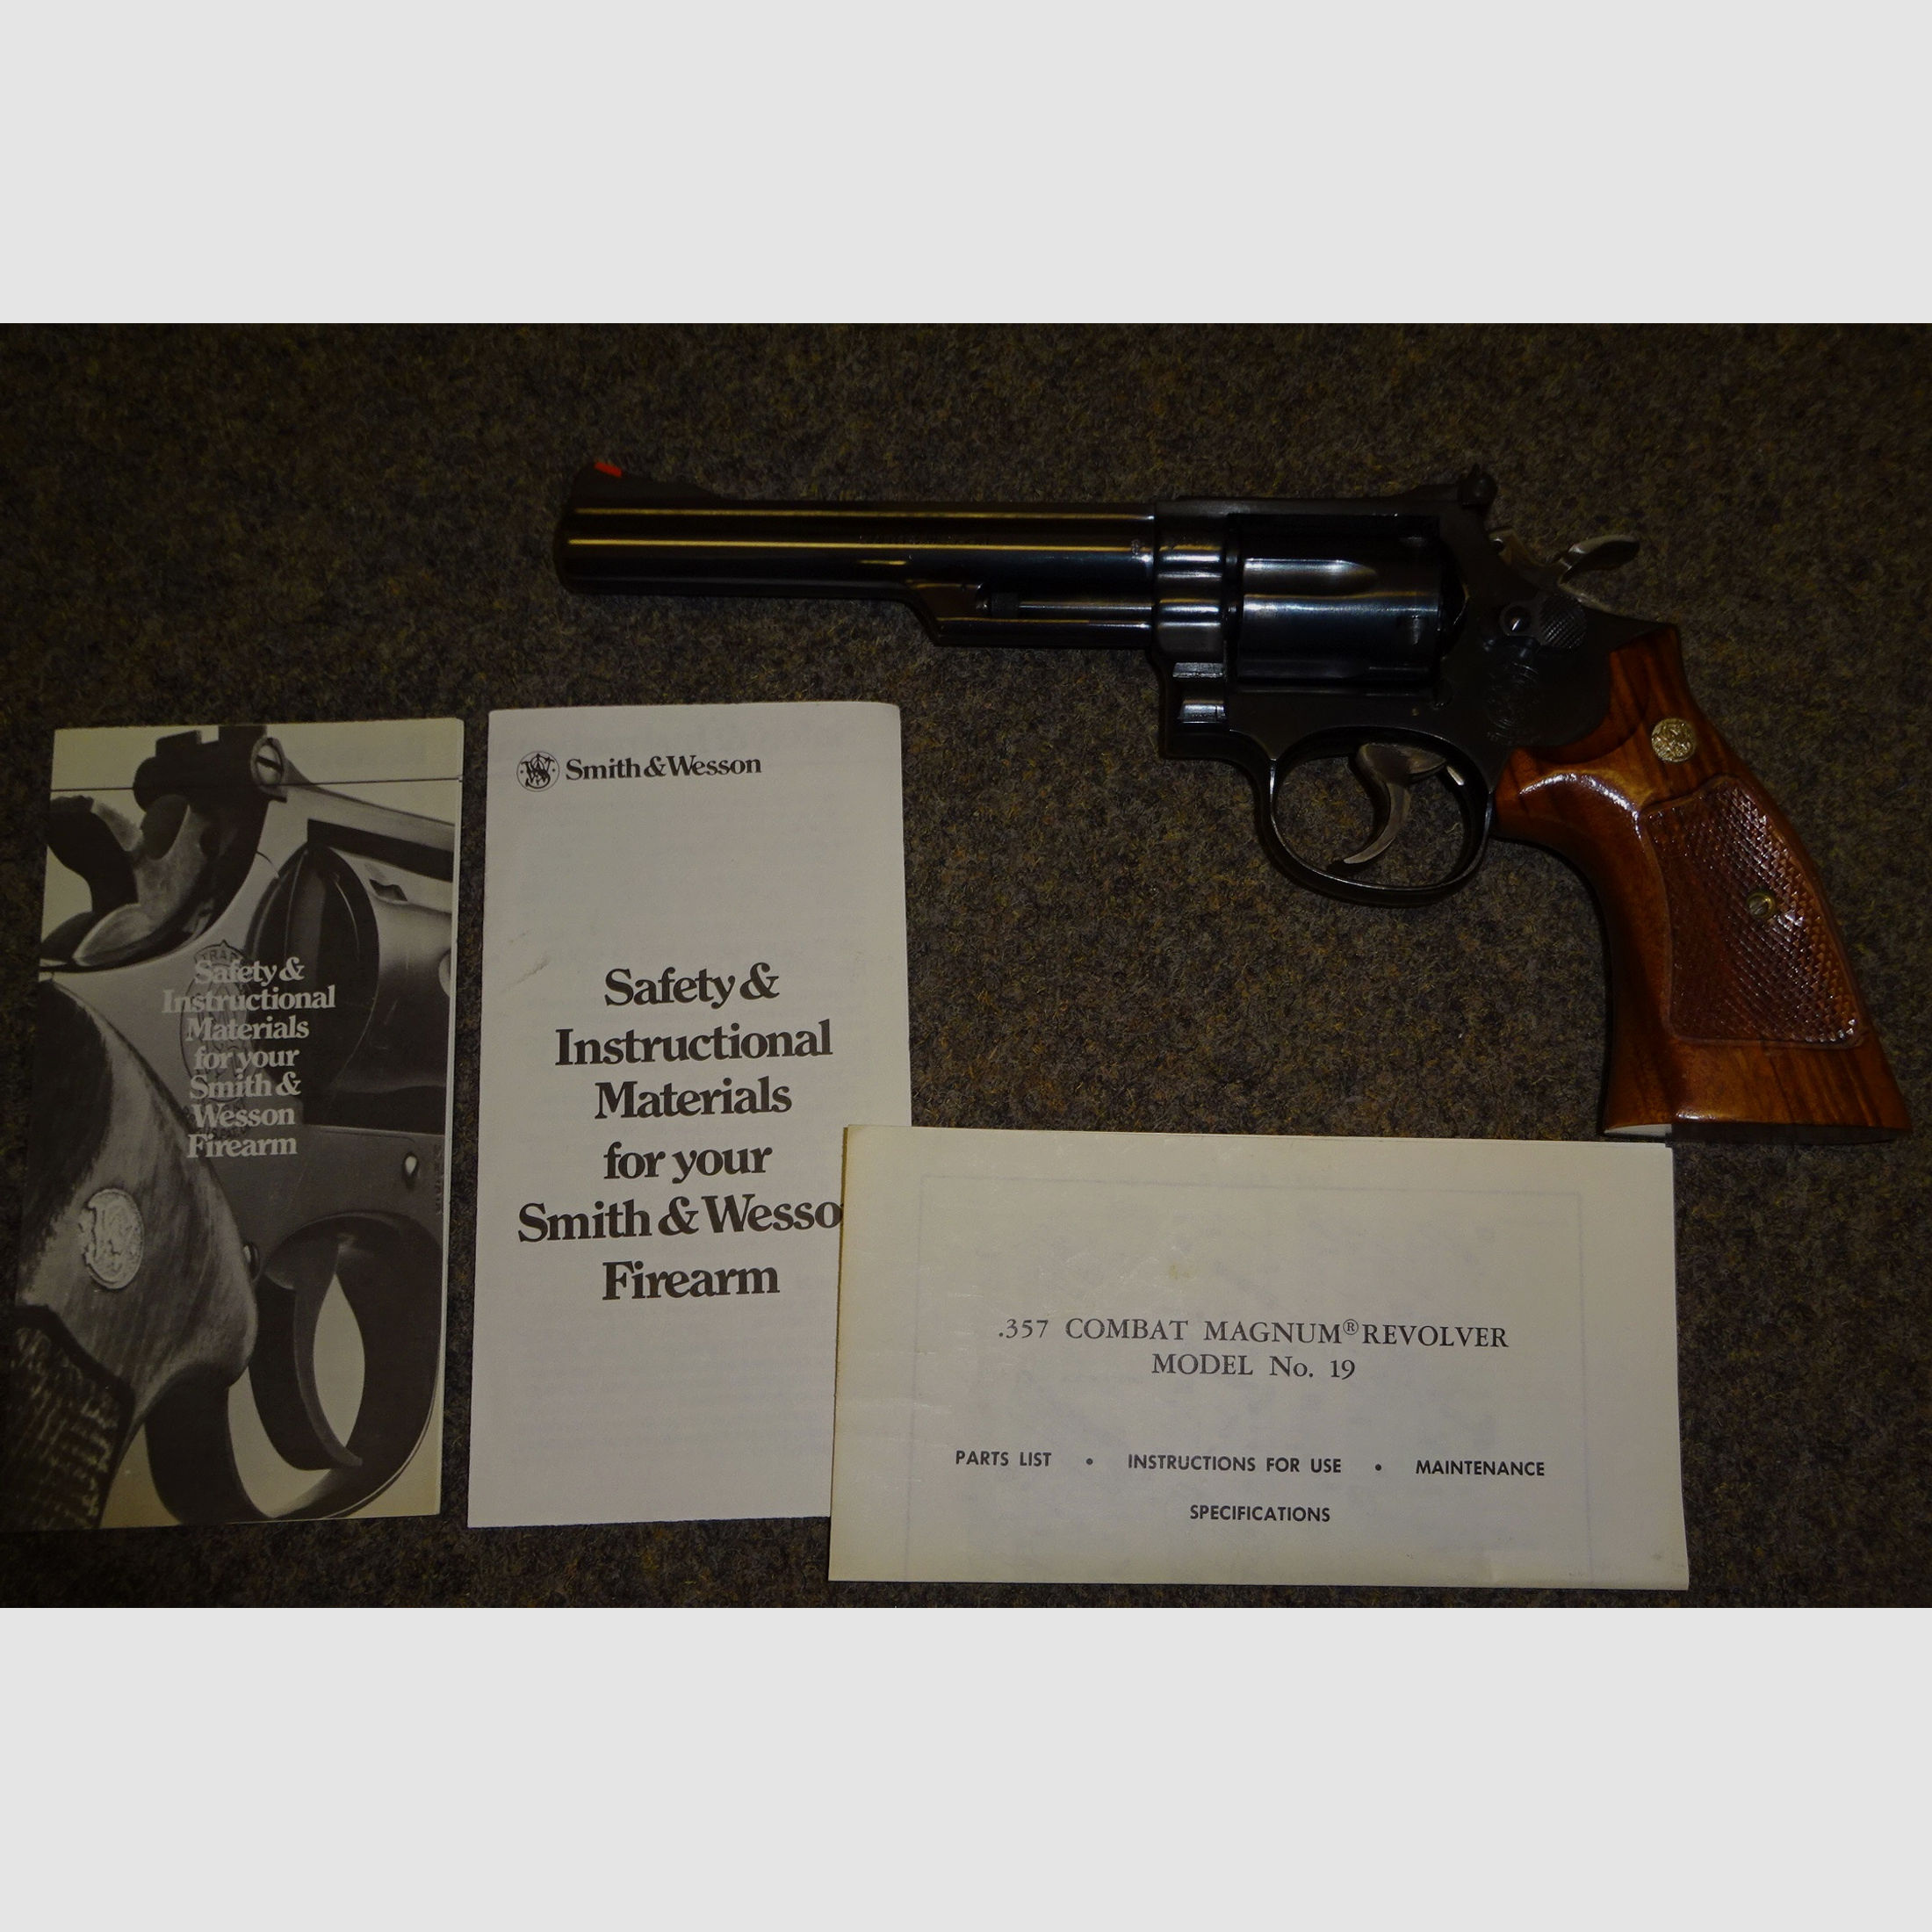 günstige Alternative zum 586: S&W Revolver Mod. 19 in .357Mag, Matchausführung mit verstellbarem Visier, 15 cm (5,5 Zoll)